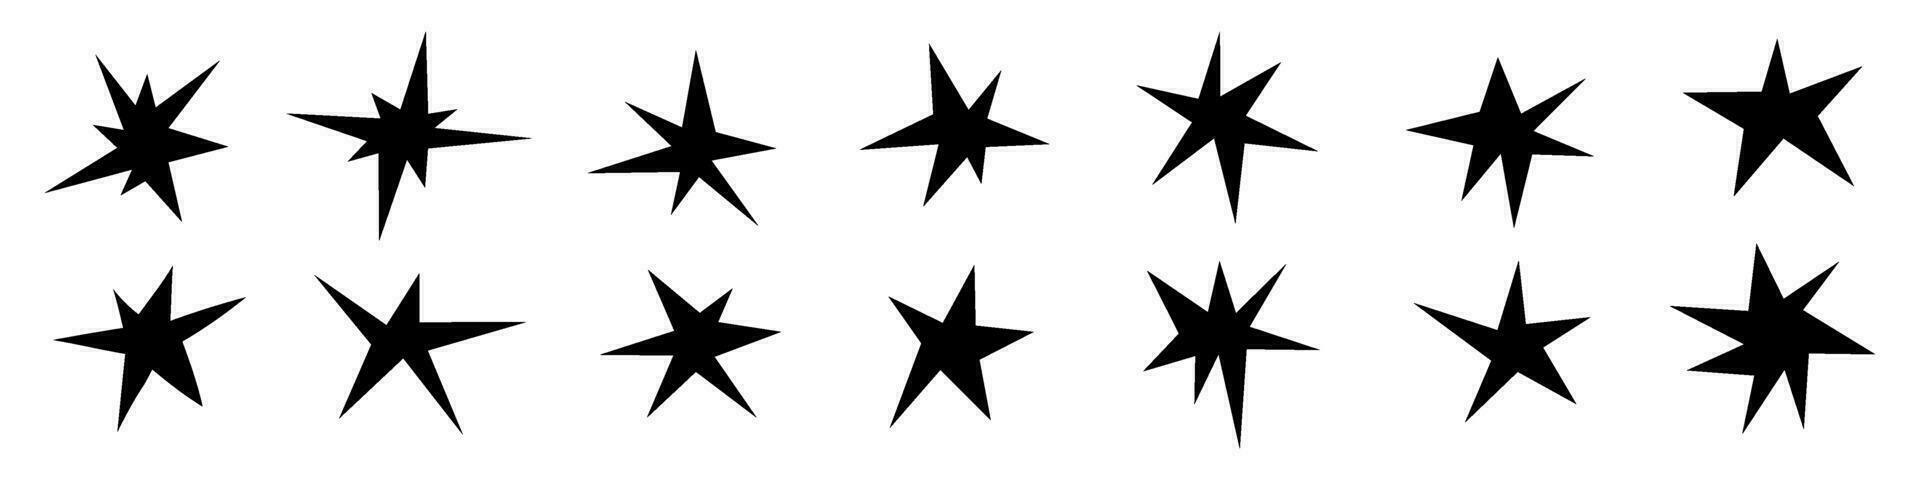 svart stjärna ikon med retro glans, abstrakt bling element. platt vektor illustrationer isolerat i bakgrund.